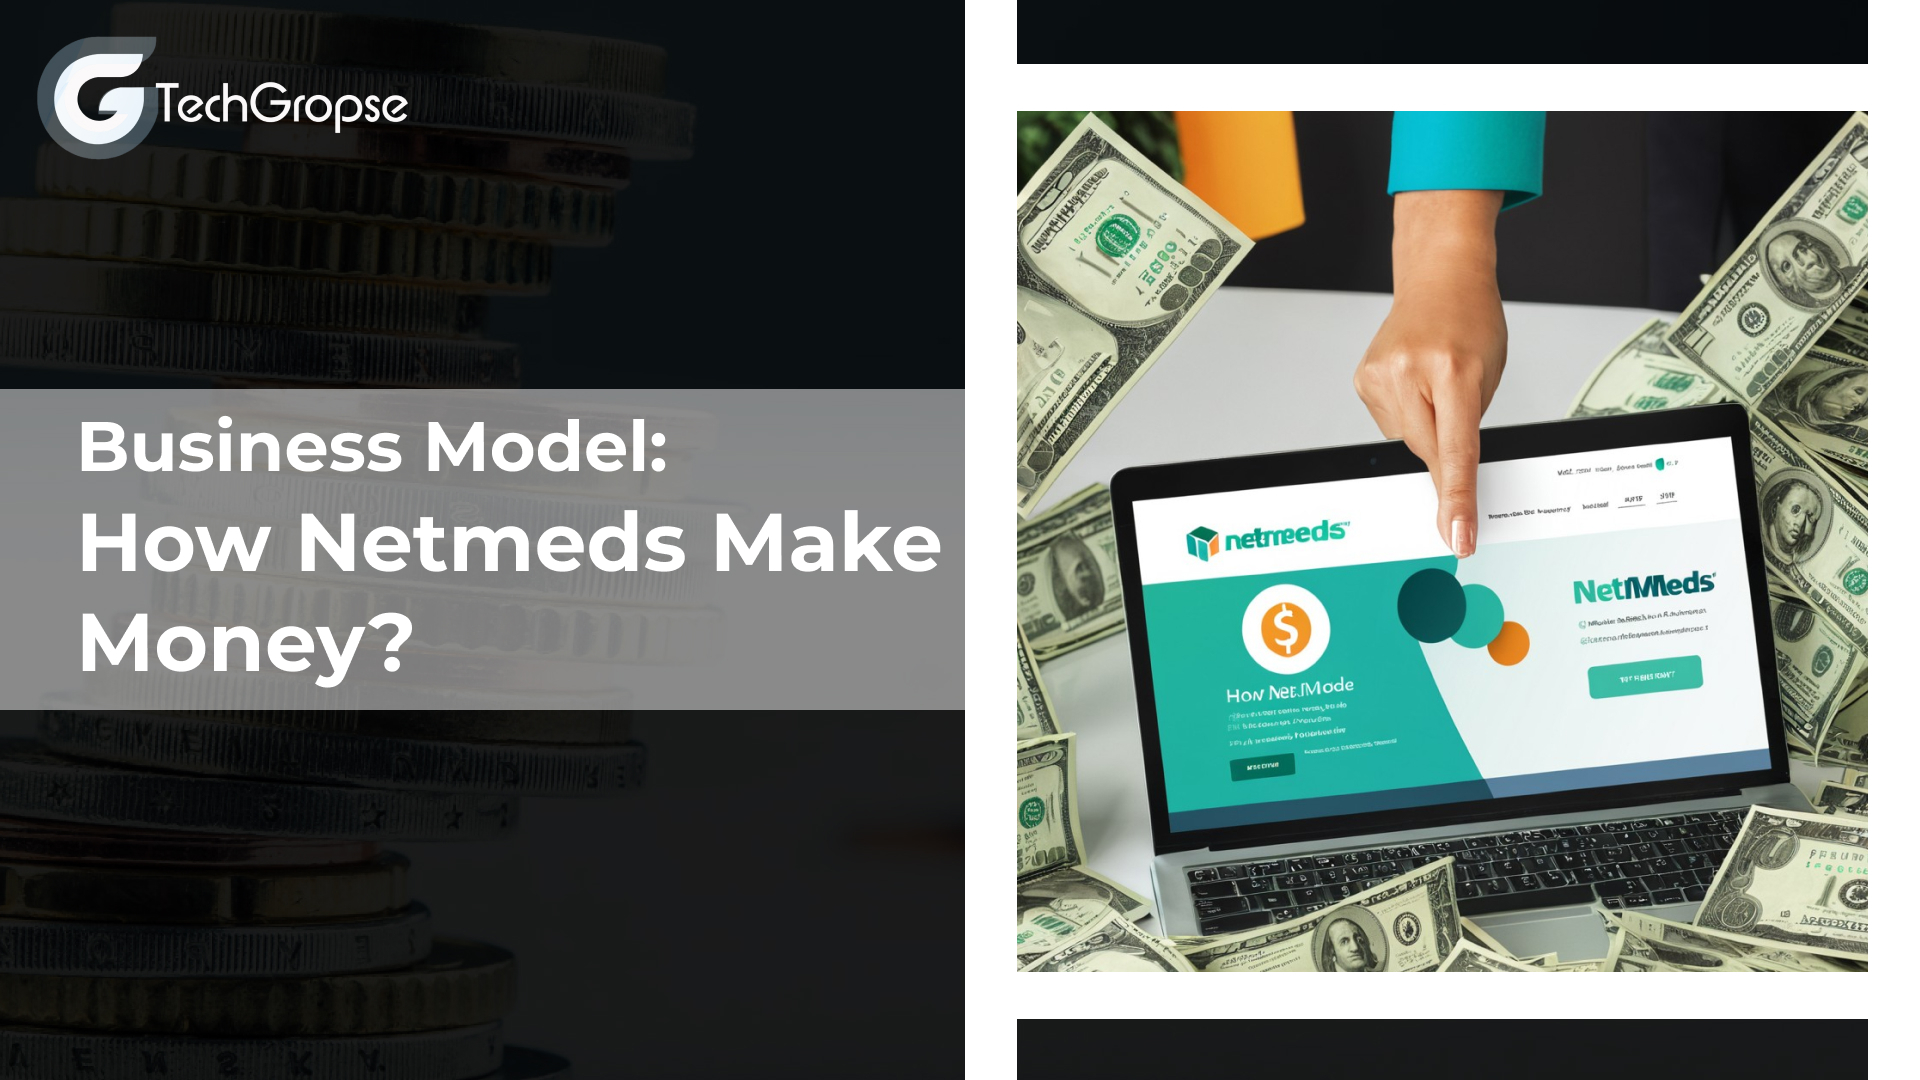 Business Model: How Netmeds Make Money?